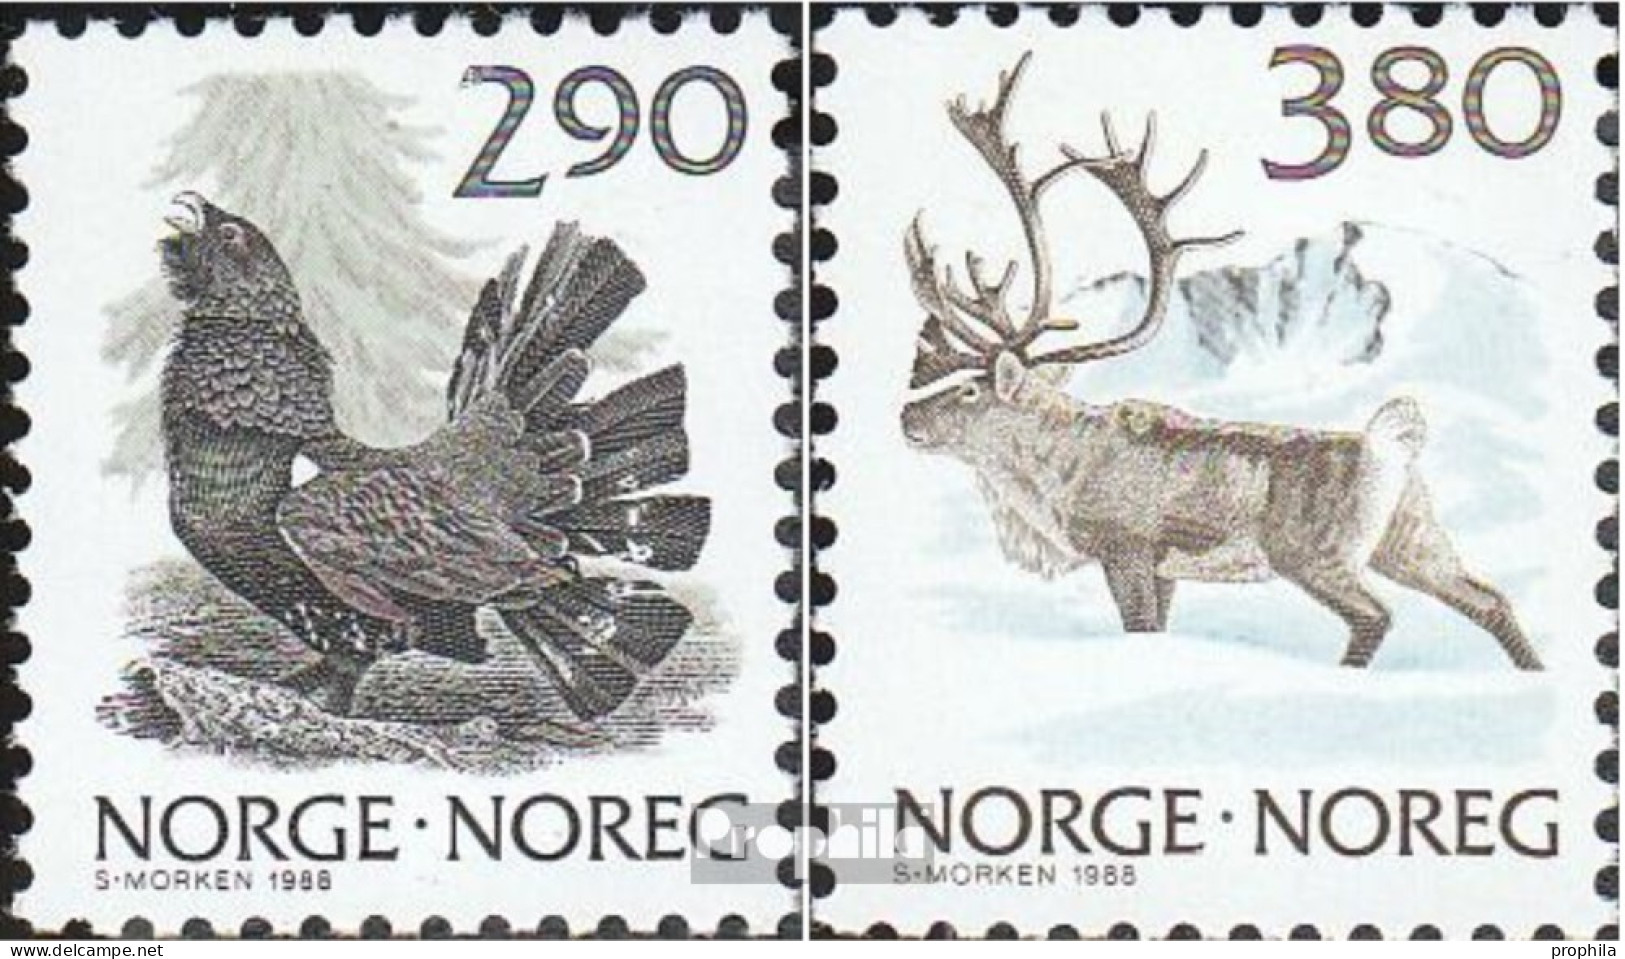 Norwegen 986-987 (kompl.Ausg.) Postfrisch 1988 Natur - Unused Stamps